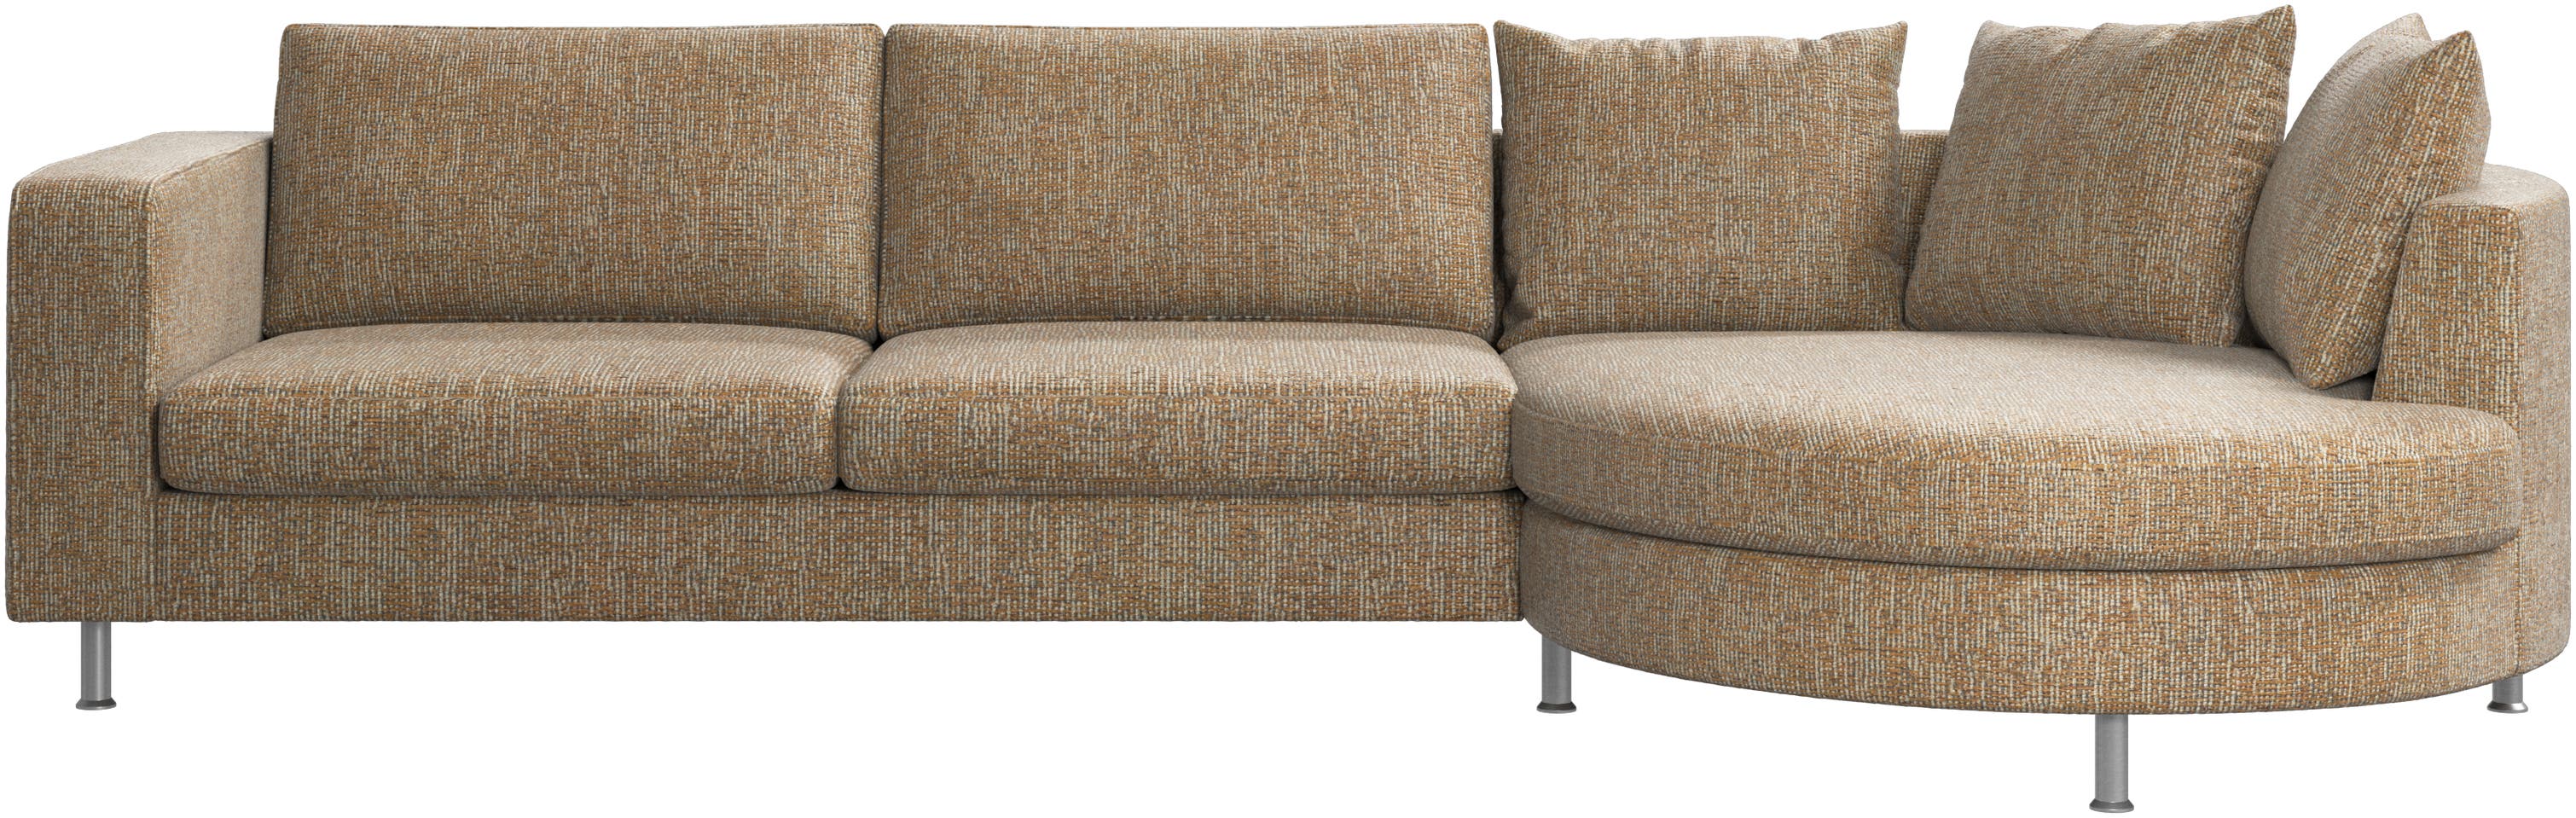 Indivi sofa with round resting unit